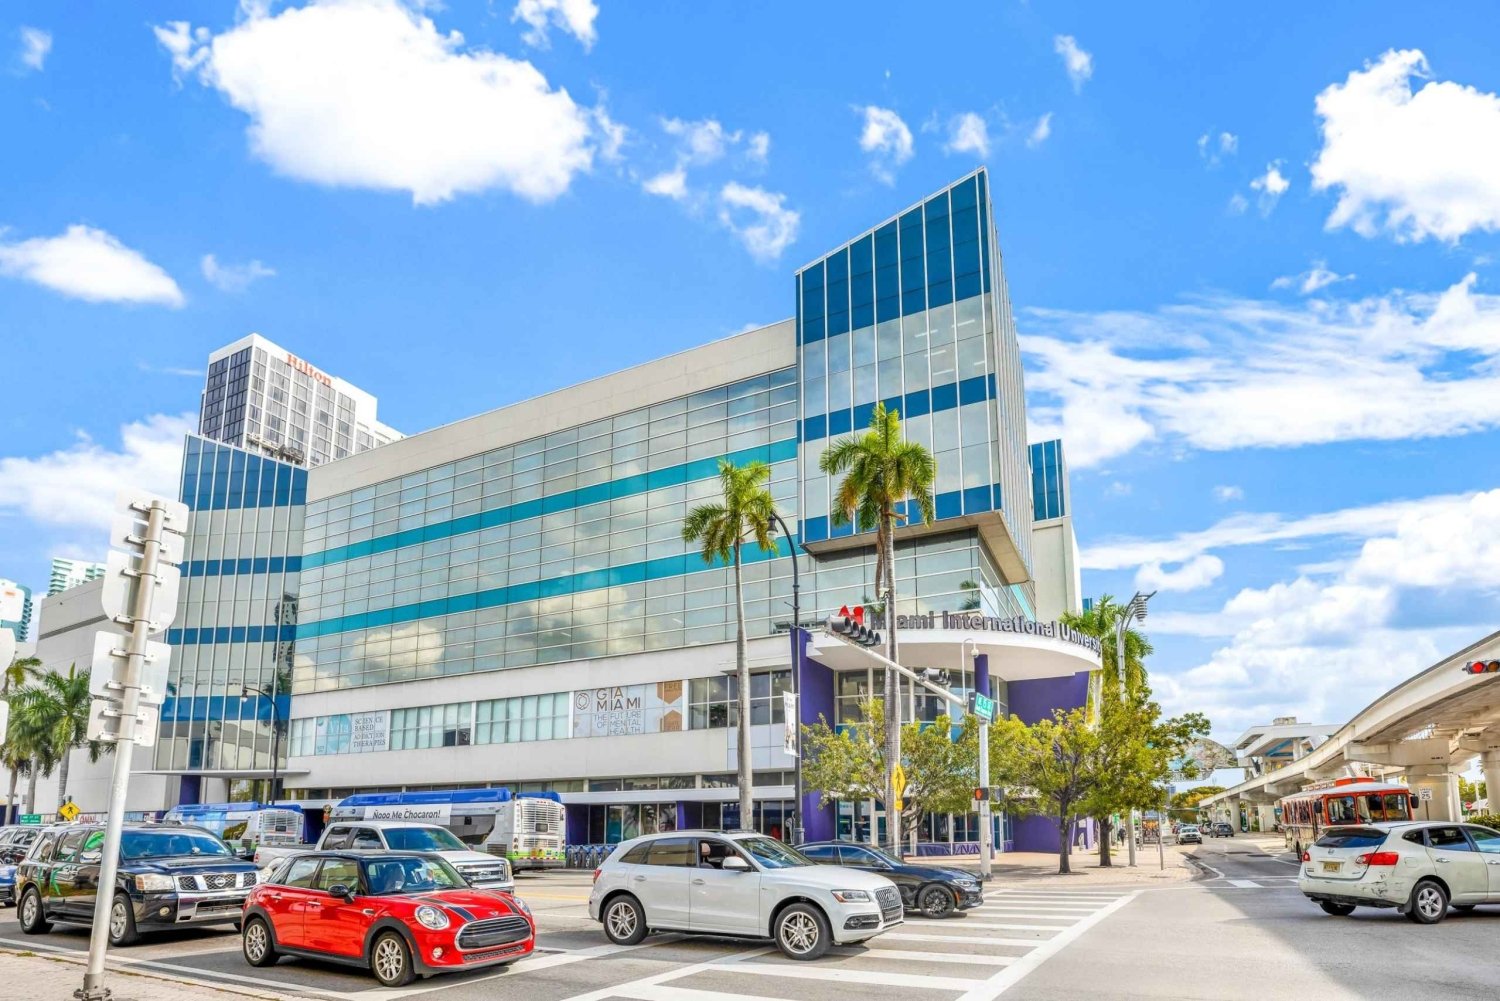 Miami: Accesso alle lounge delle compagnie di crociera e deposito bagagli